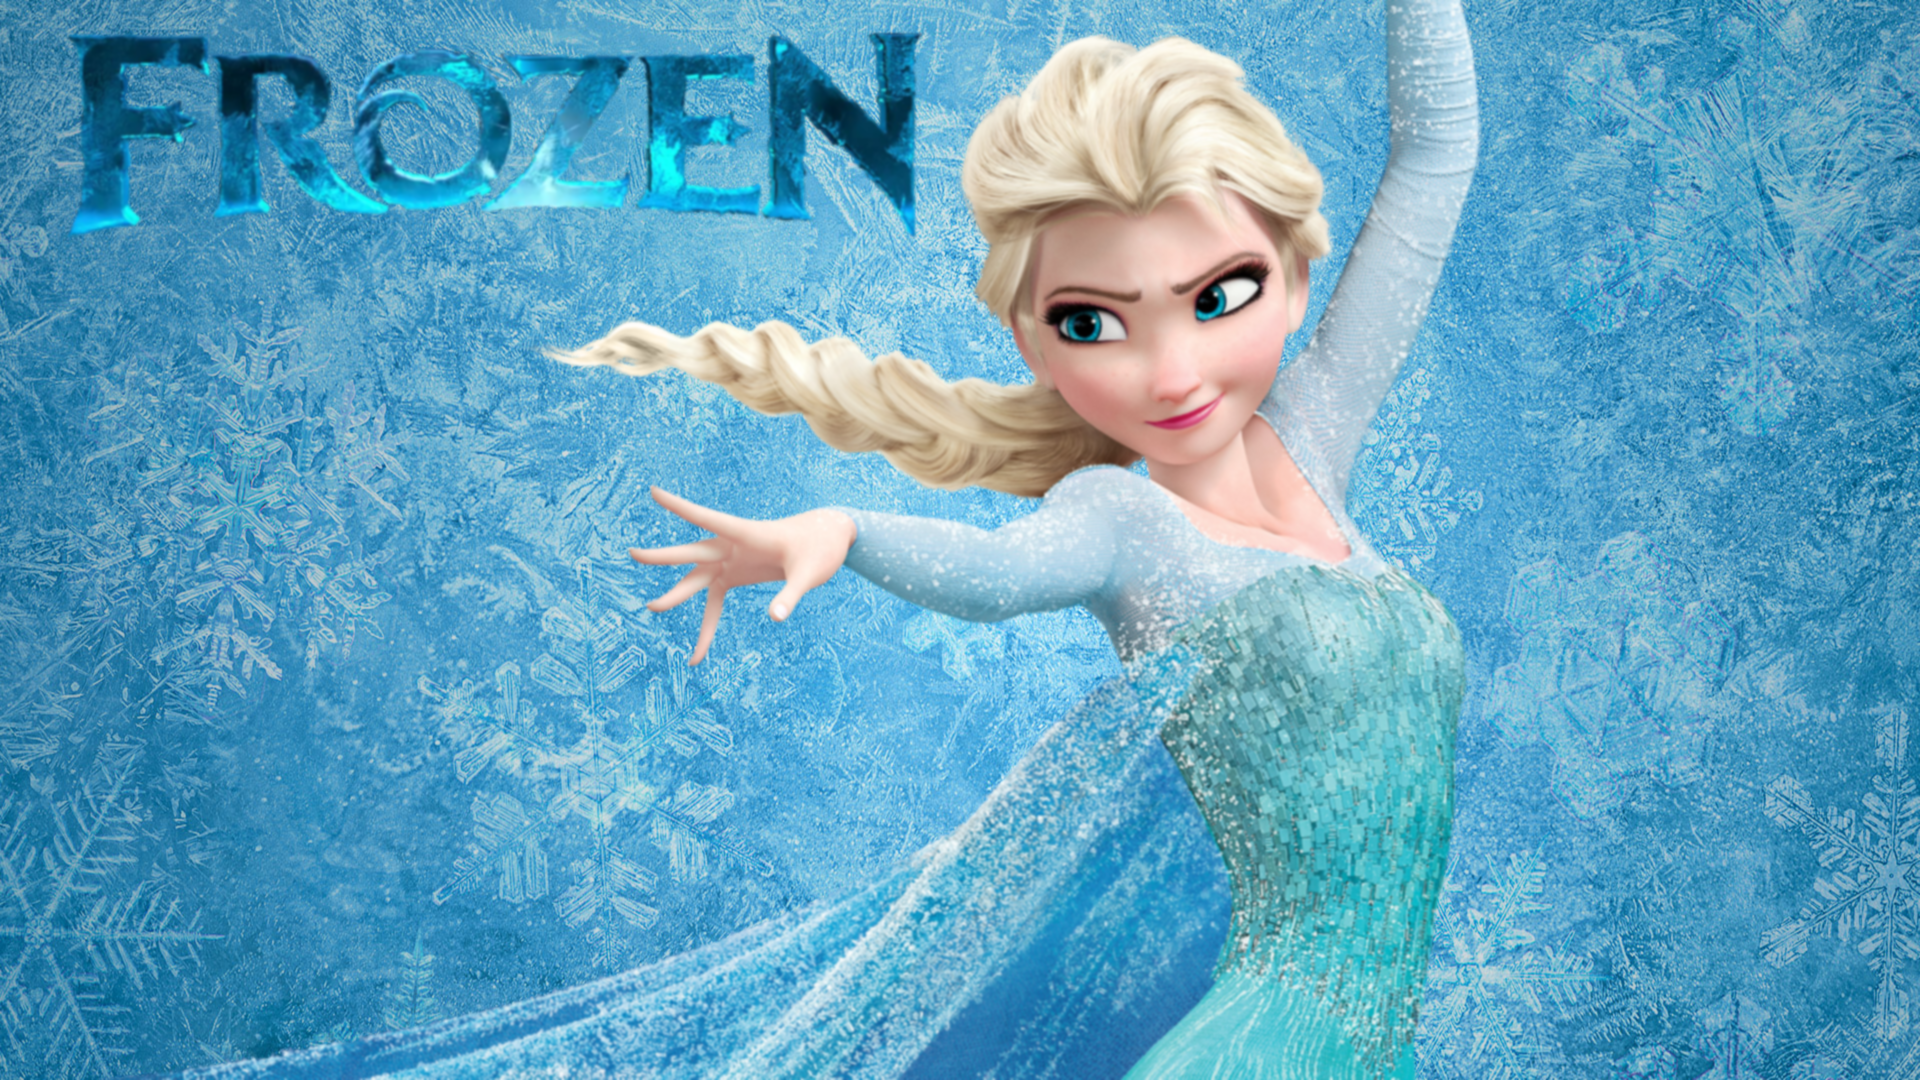 HD Frozen Elsa Wallpaper 1920x1080 by robotthunder500